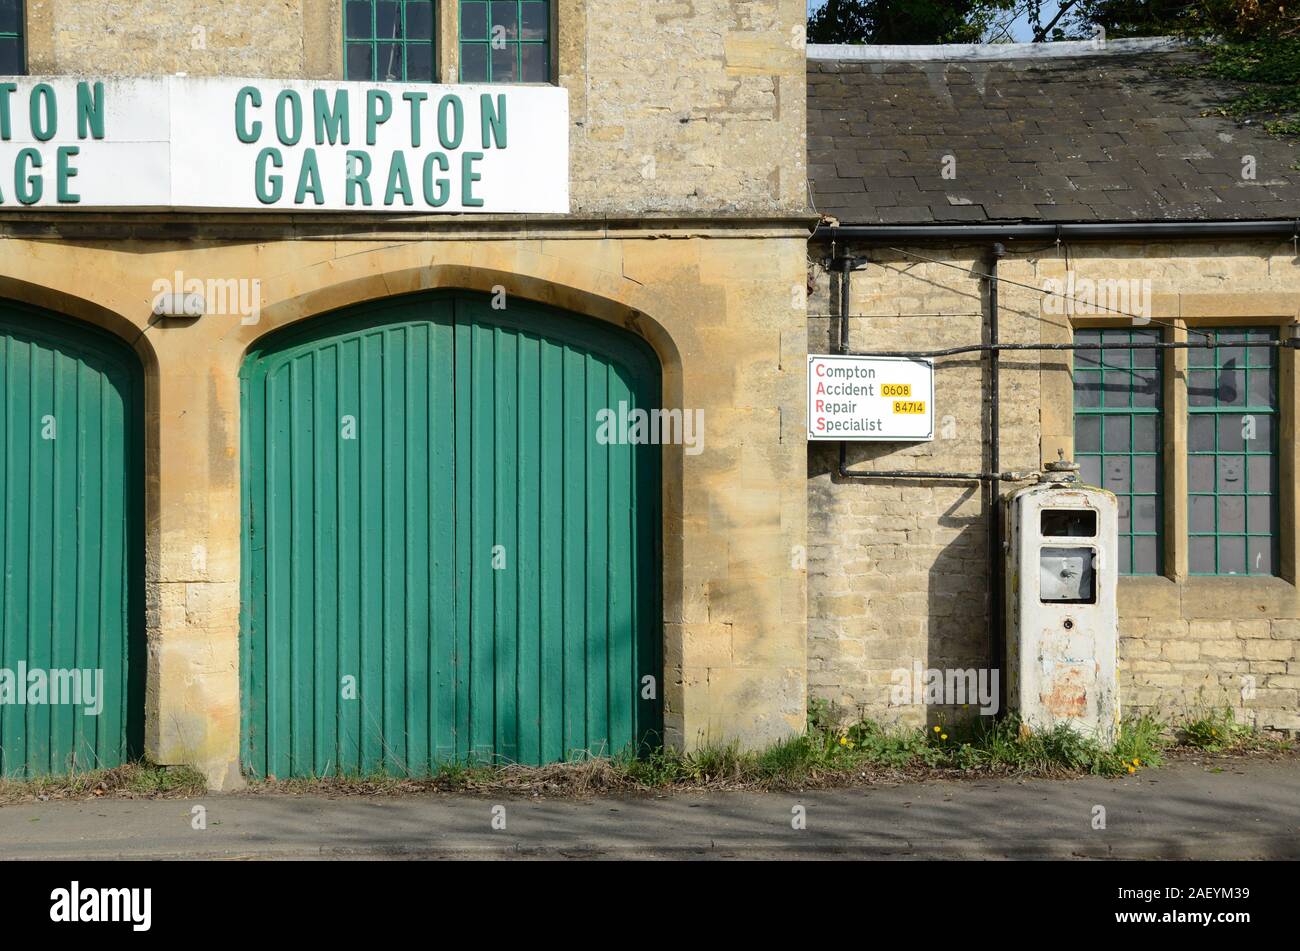 Cerrada, vacante & Aldea abandonada, garaje, Estación de carga y la bomba de gasolina Antigua en Long Compton Warwickshire Inglaterra Foto de stock